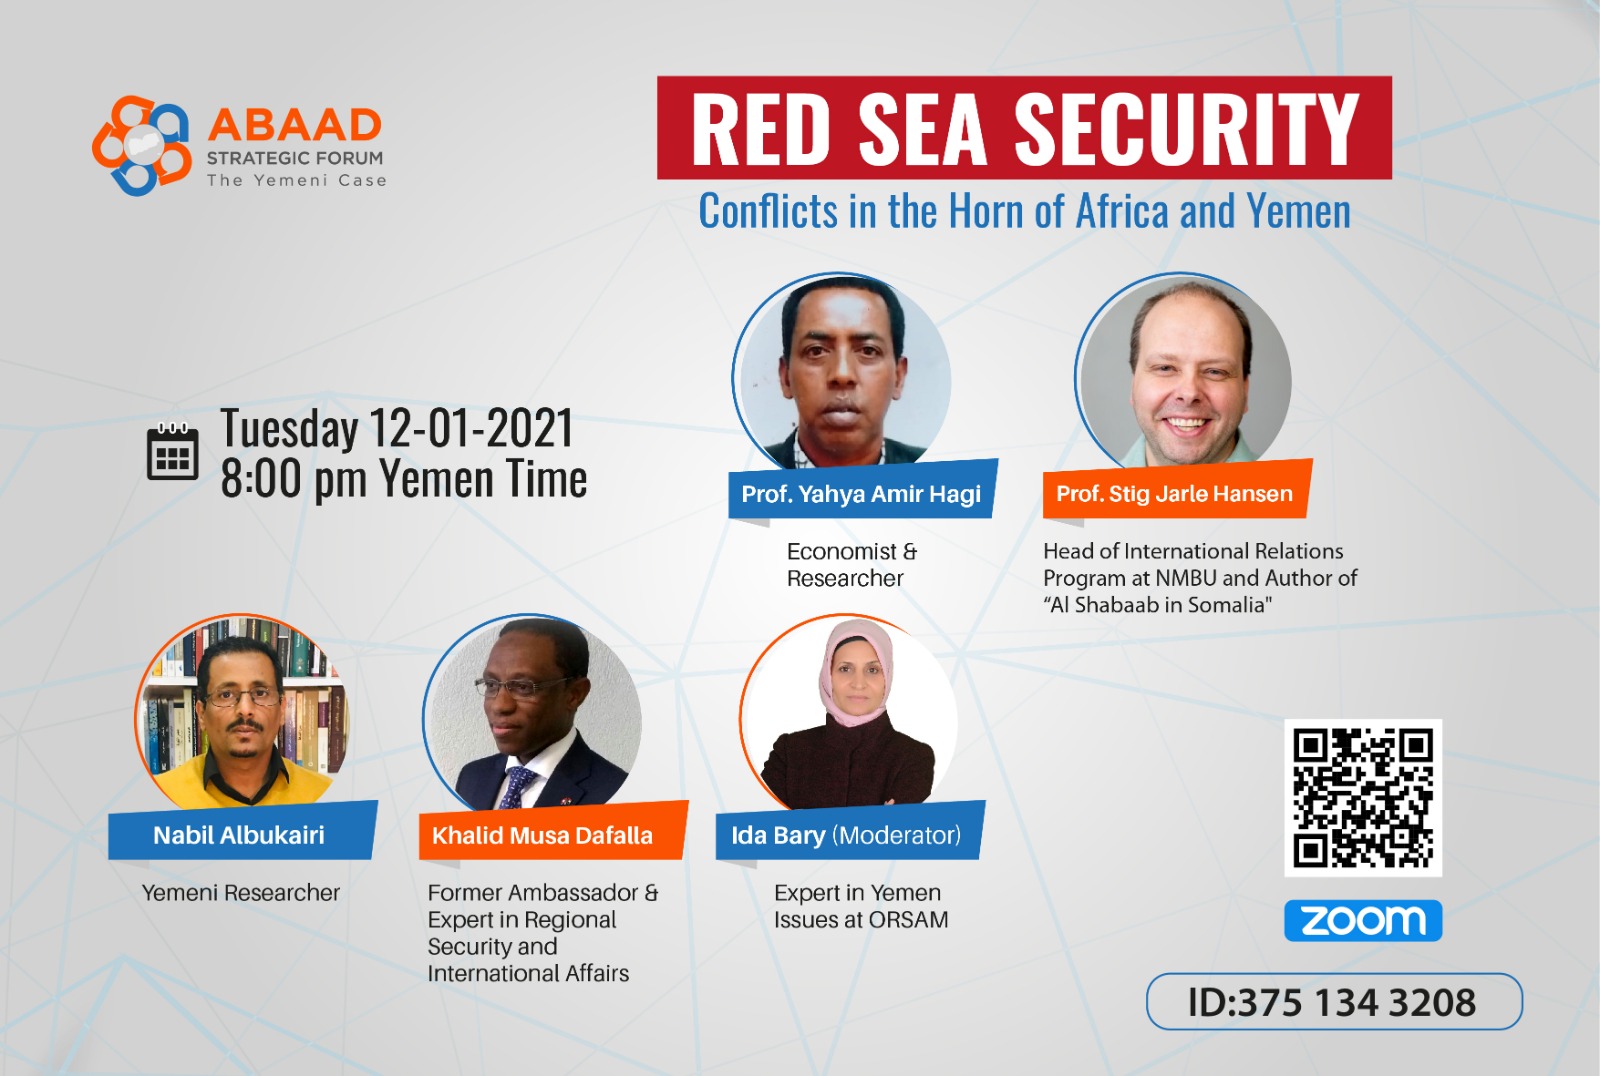  ندوة لمنتدى أبعاد الإستراتيجي حول أمن البحر الأحمر والصراع في القرن الإفريقي واليمن